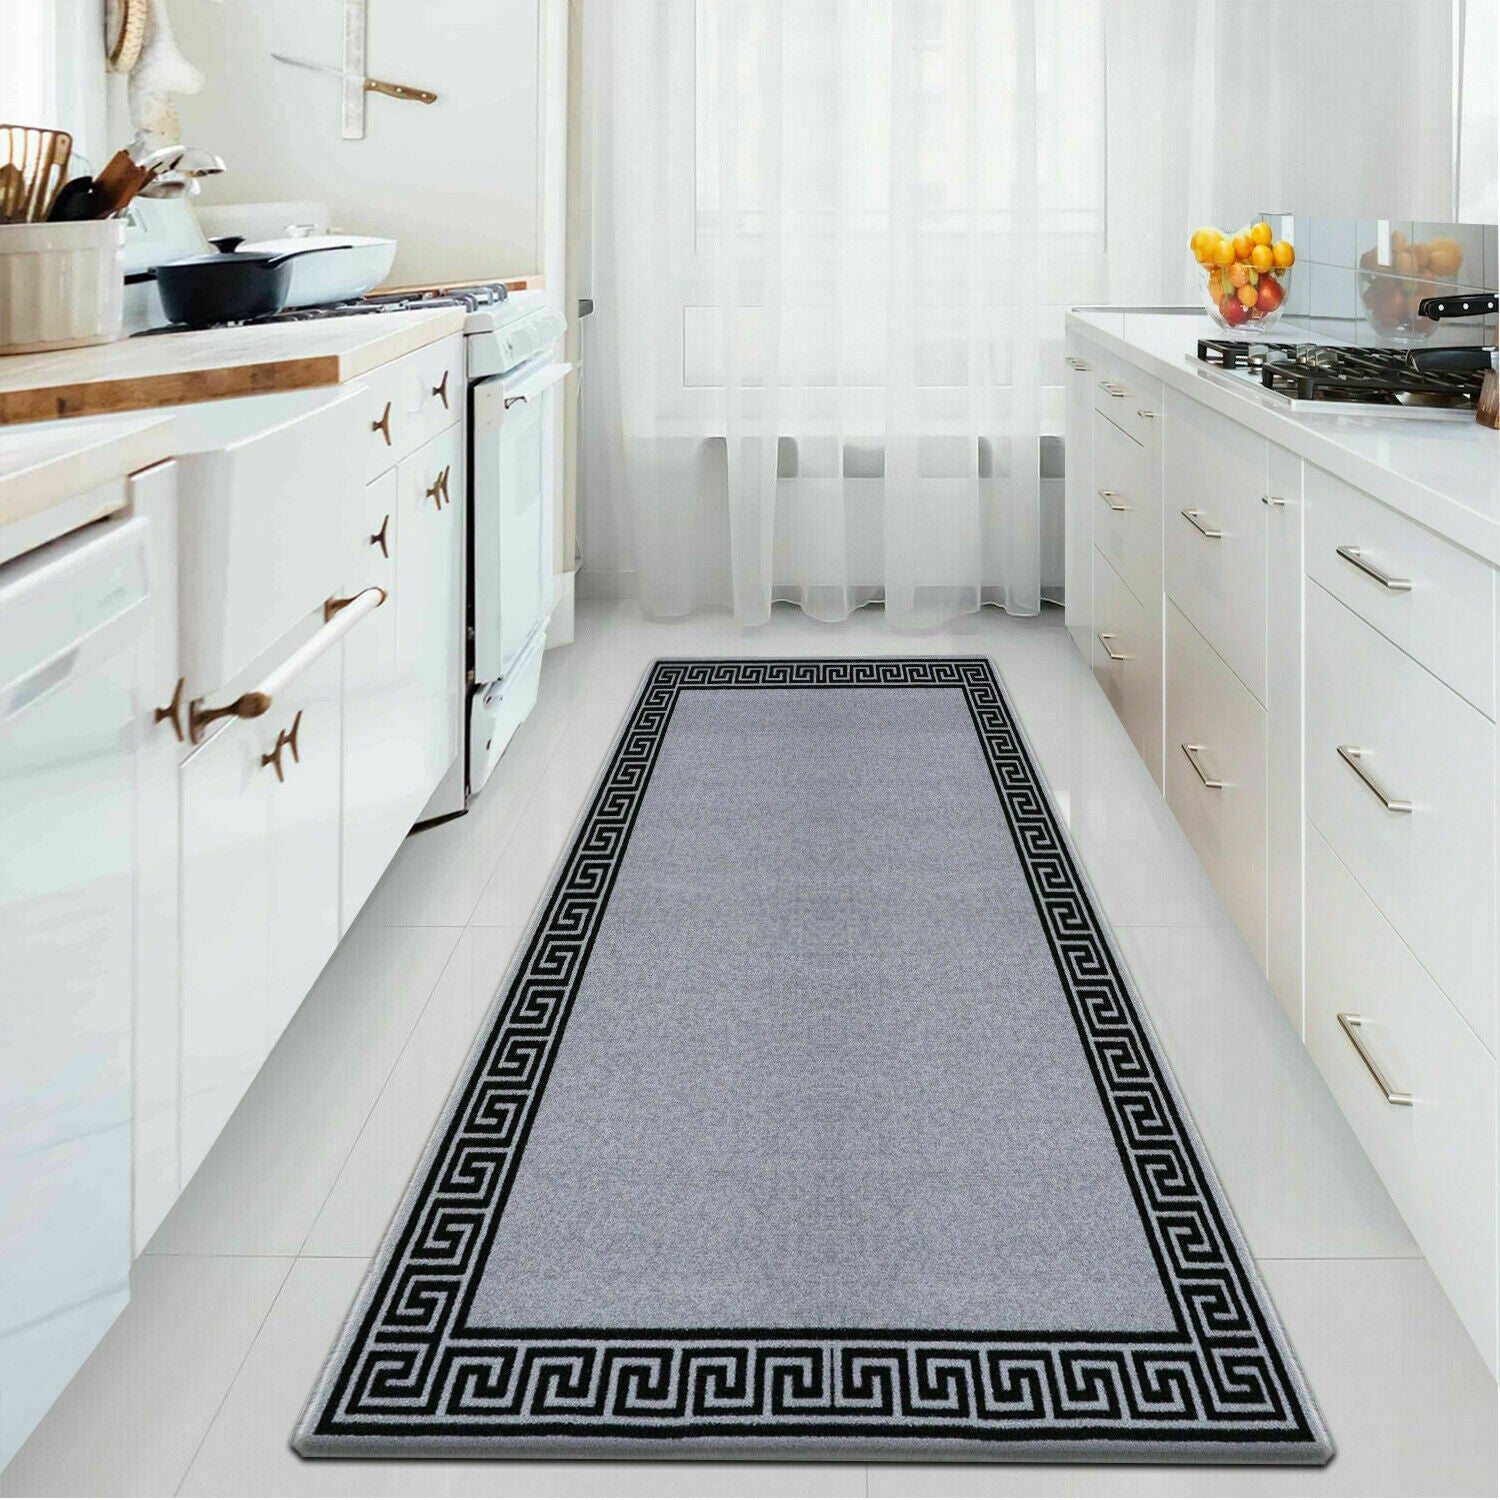 Non Slip Door Mats Long Hallway Runner Bedroom Rugs Kitchen Carpet